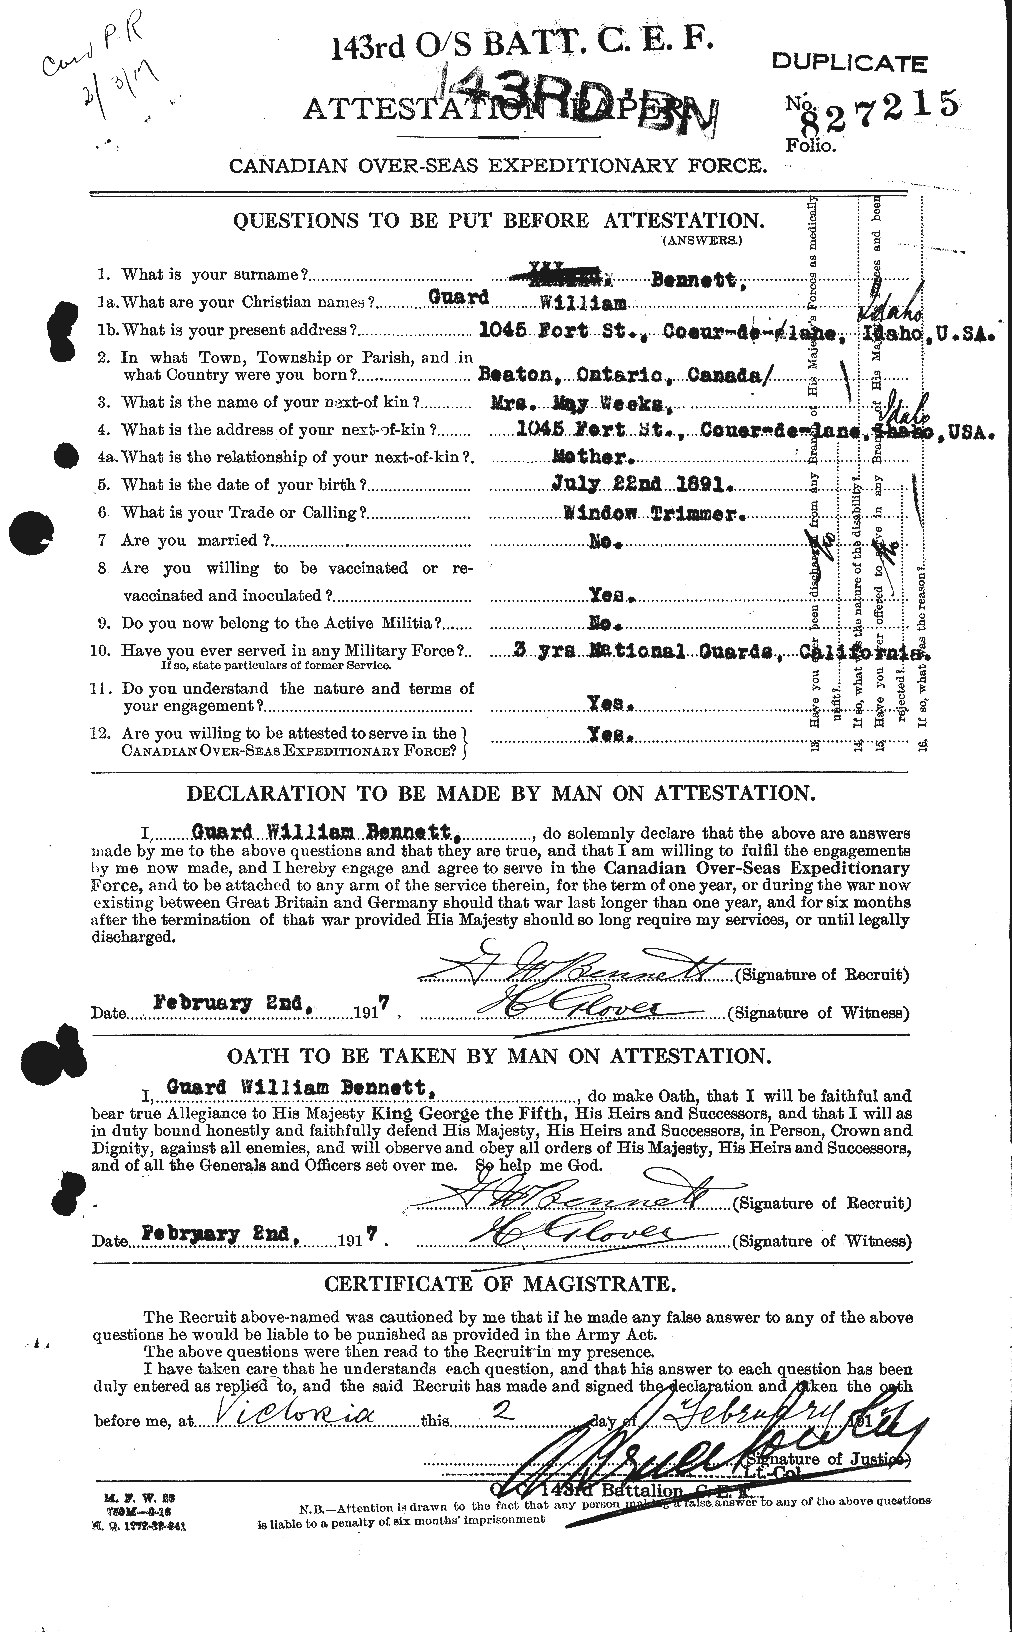 Dossiers du Personnel de la Première Guerre mondiale - CEC 238439a